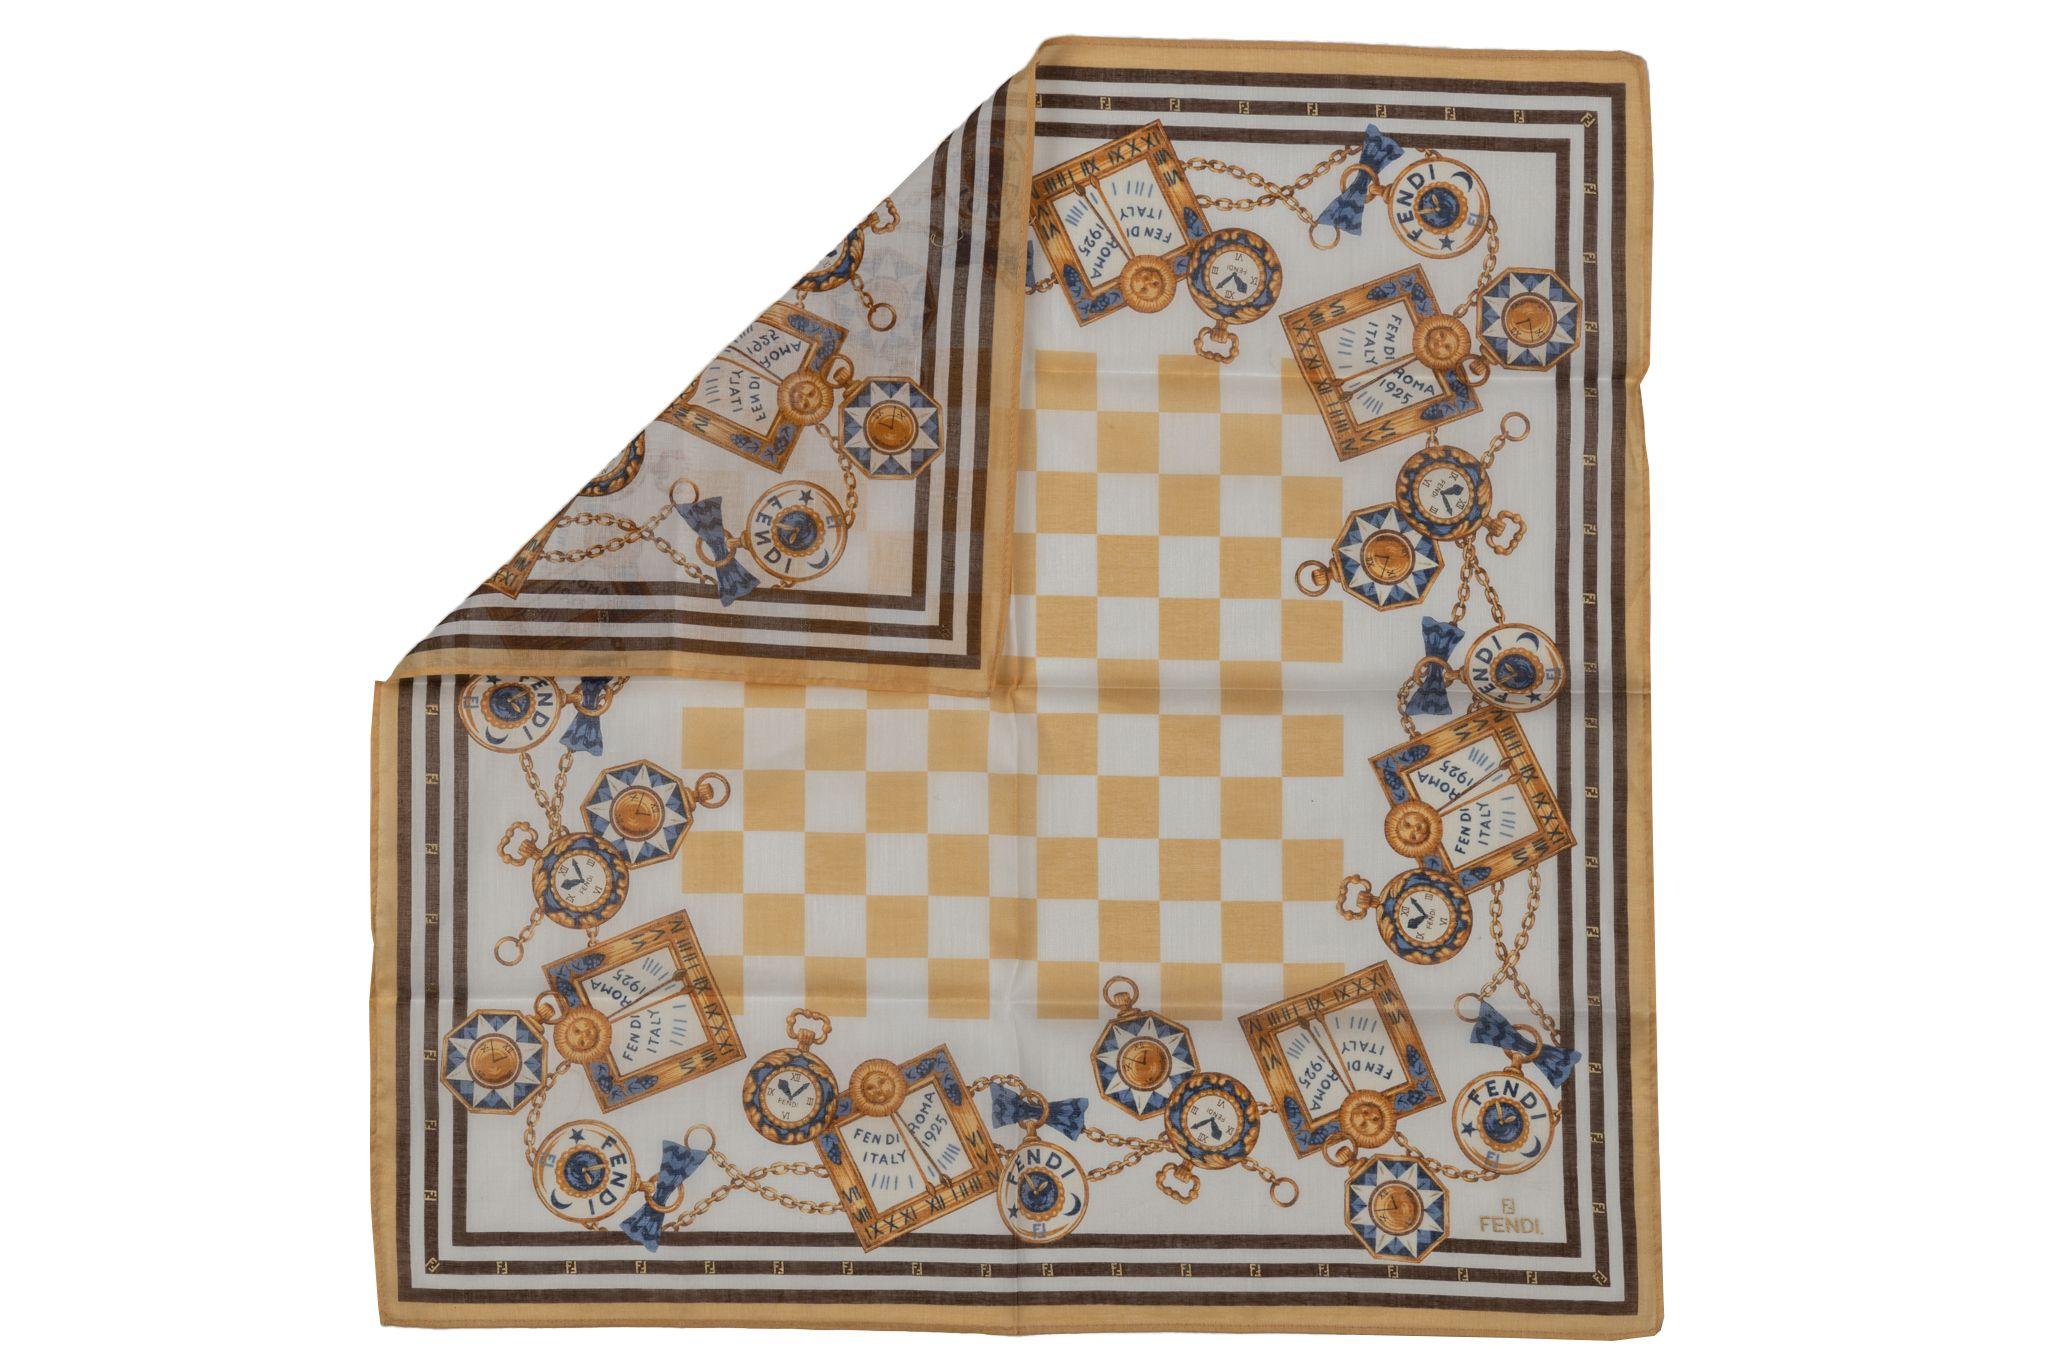 Fendi new cotton gavroche, white and yellow checkers design with clocks detail. 
No label.